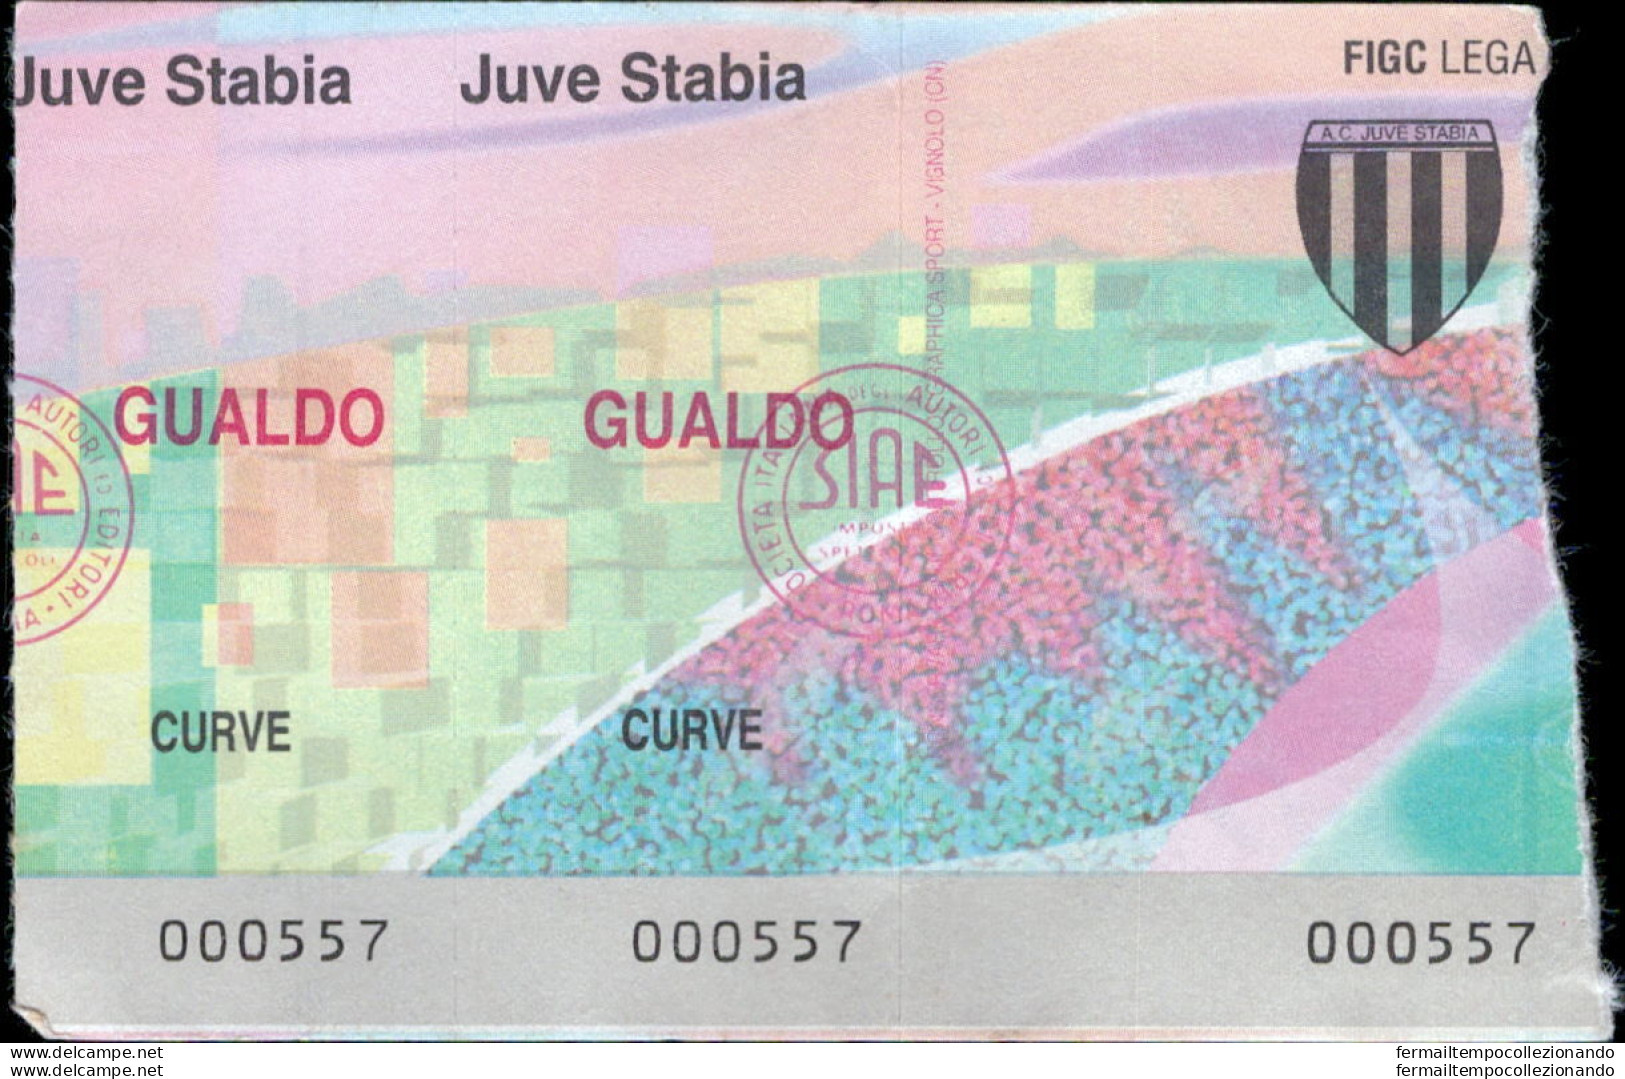 Bl132  Biglietto Calcio Ticket  Juve Stabia - Gualdo - Biglietti D'ingresso